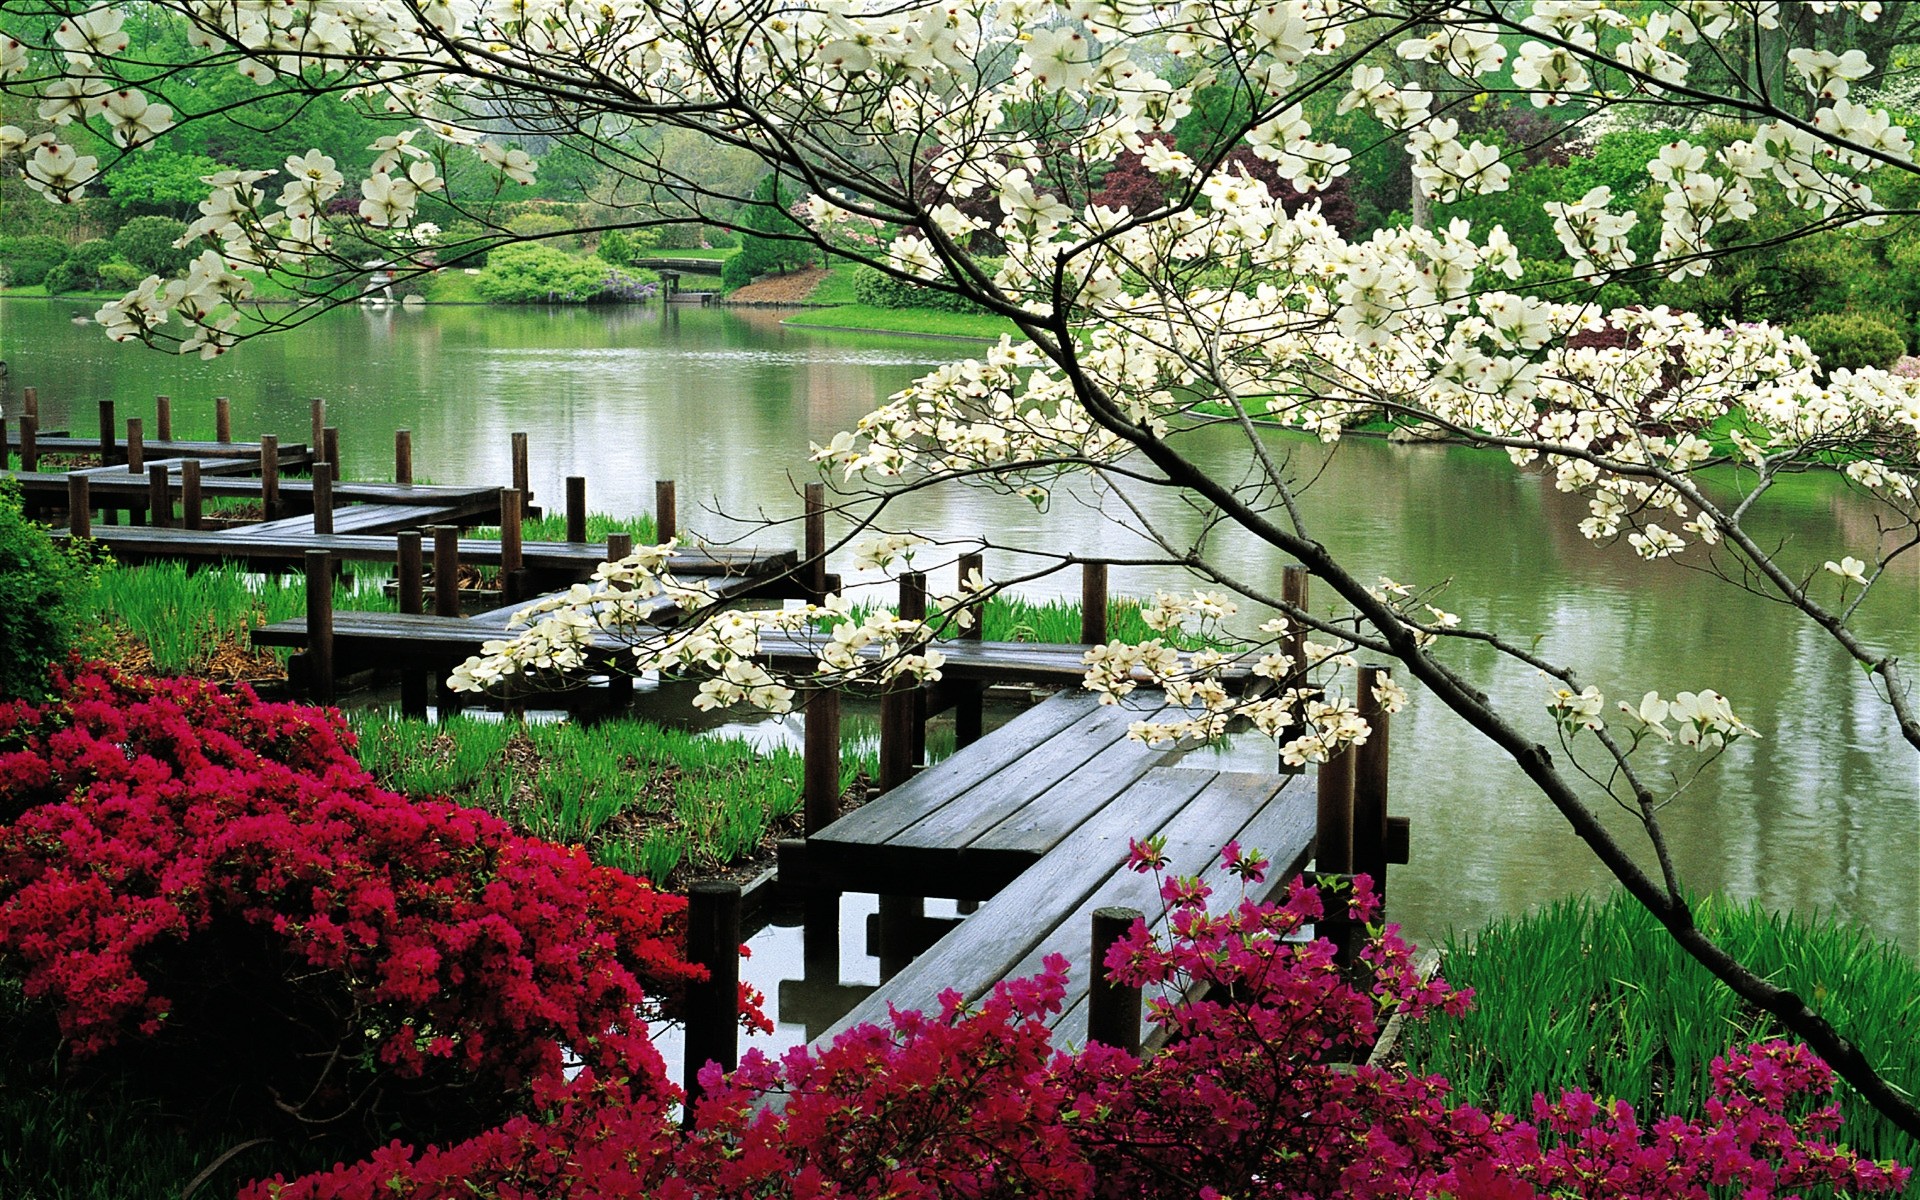 весна цветок сад дерево парк природа флора блюминг пейзаж сезон на открытом воздухе ботанический кустарник лето рододендрон двор официальное цвет весна лепесток растения пейзажи